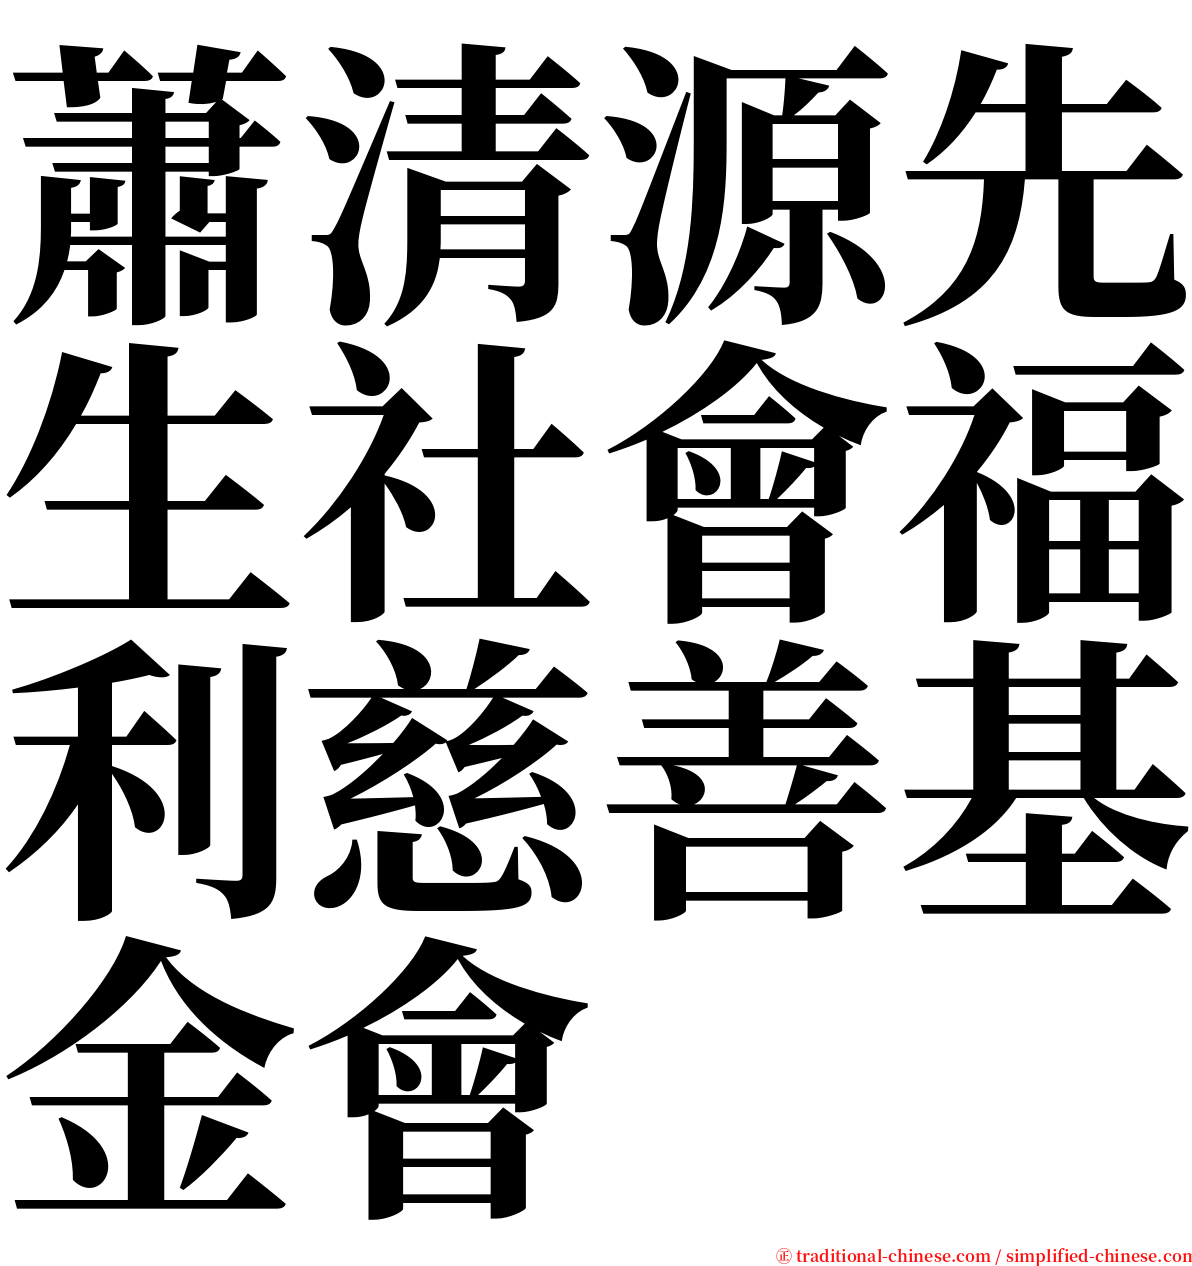 蕭清源先生社會福利慈善基金會 serif font